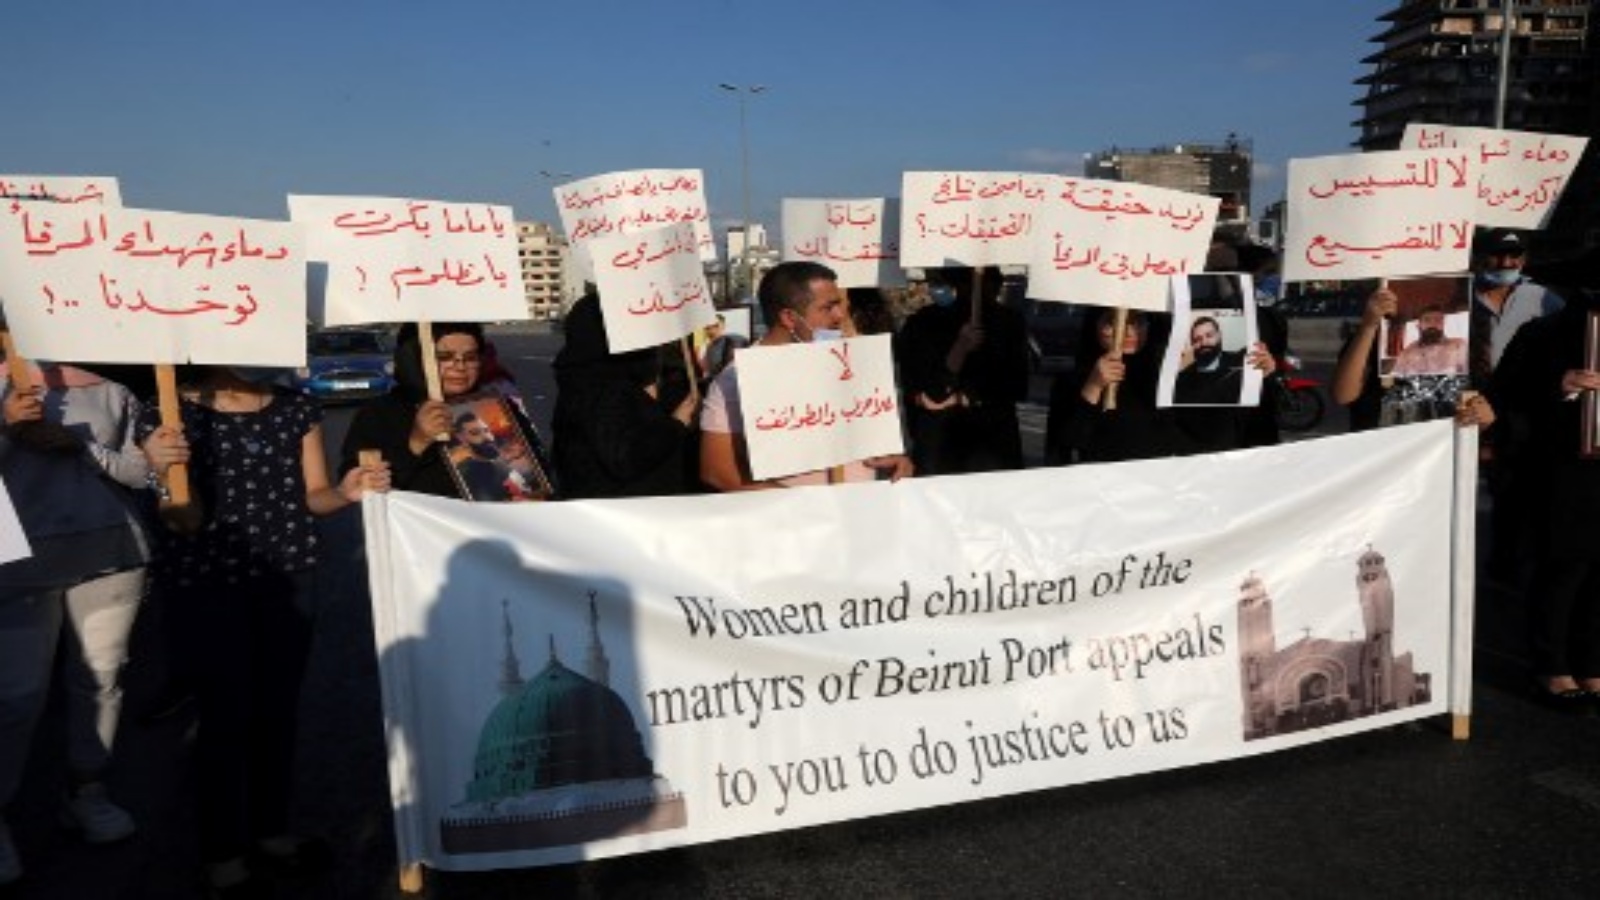 lمتظاهرون يحملون لافتات وصور لأفراد عائلاتهم وأصدقائهم الذين قُتلوا في الانفجار الهائل في 4 أغسطس / آب في ميناء بيروت ، يتجمعون هناك بعد شهرين من الكارثة التي أودت بحياة 190 شخصًا على الأقل وأصابت أكثر من 6500 